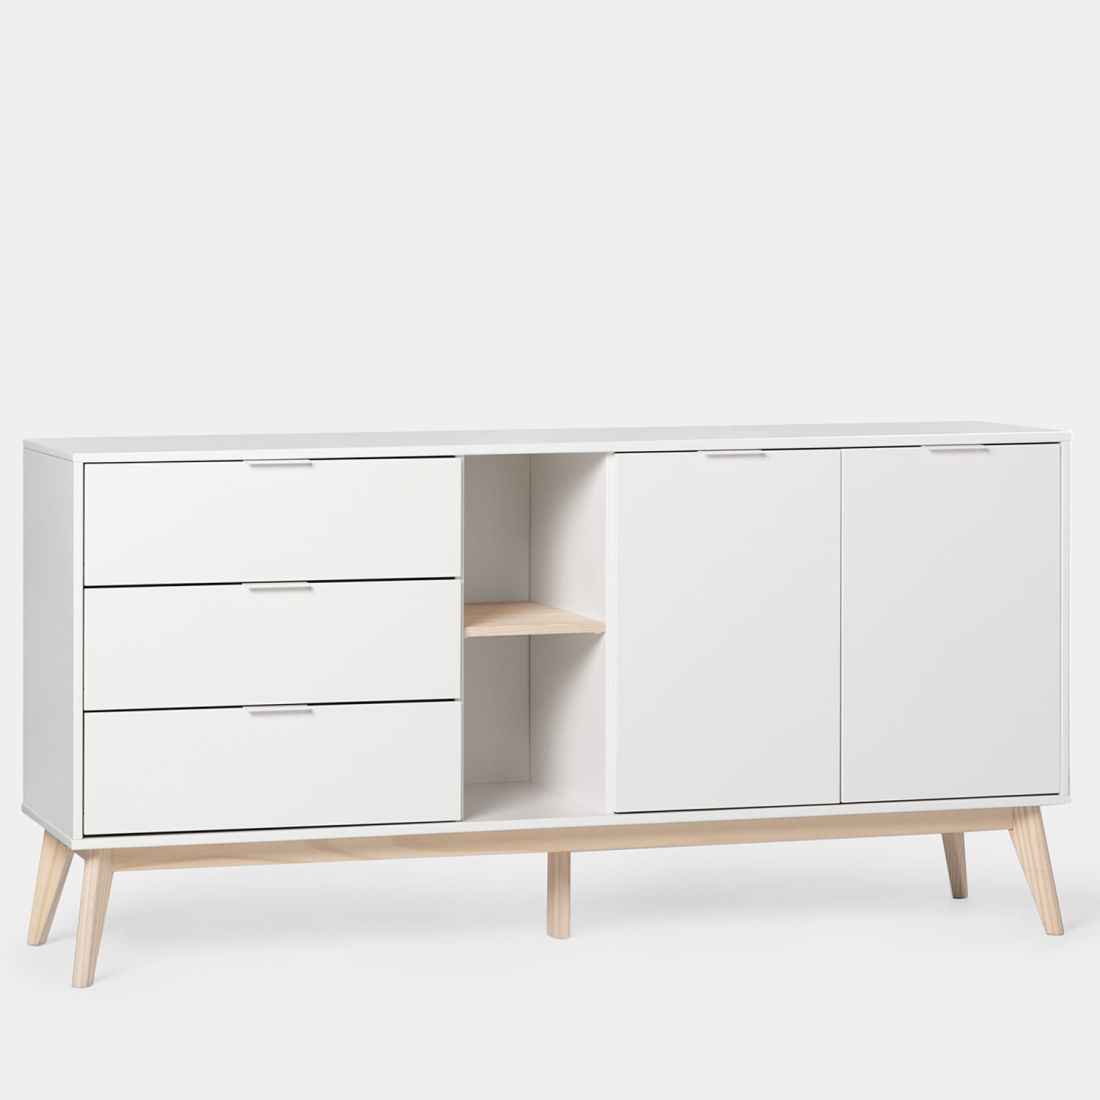 El aparador de estilo nórdico lacado en blanco Troy es el mueble de almacenaje ideal para tu hogar. Gracias a sus tres cajones